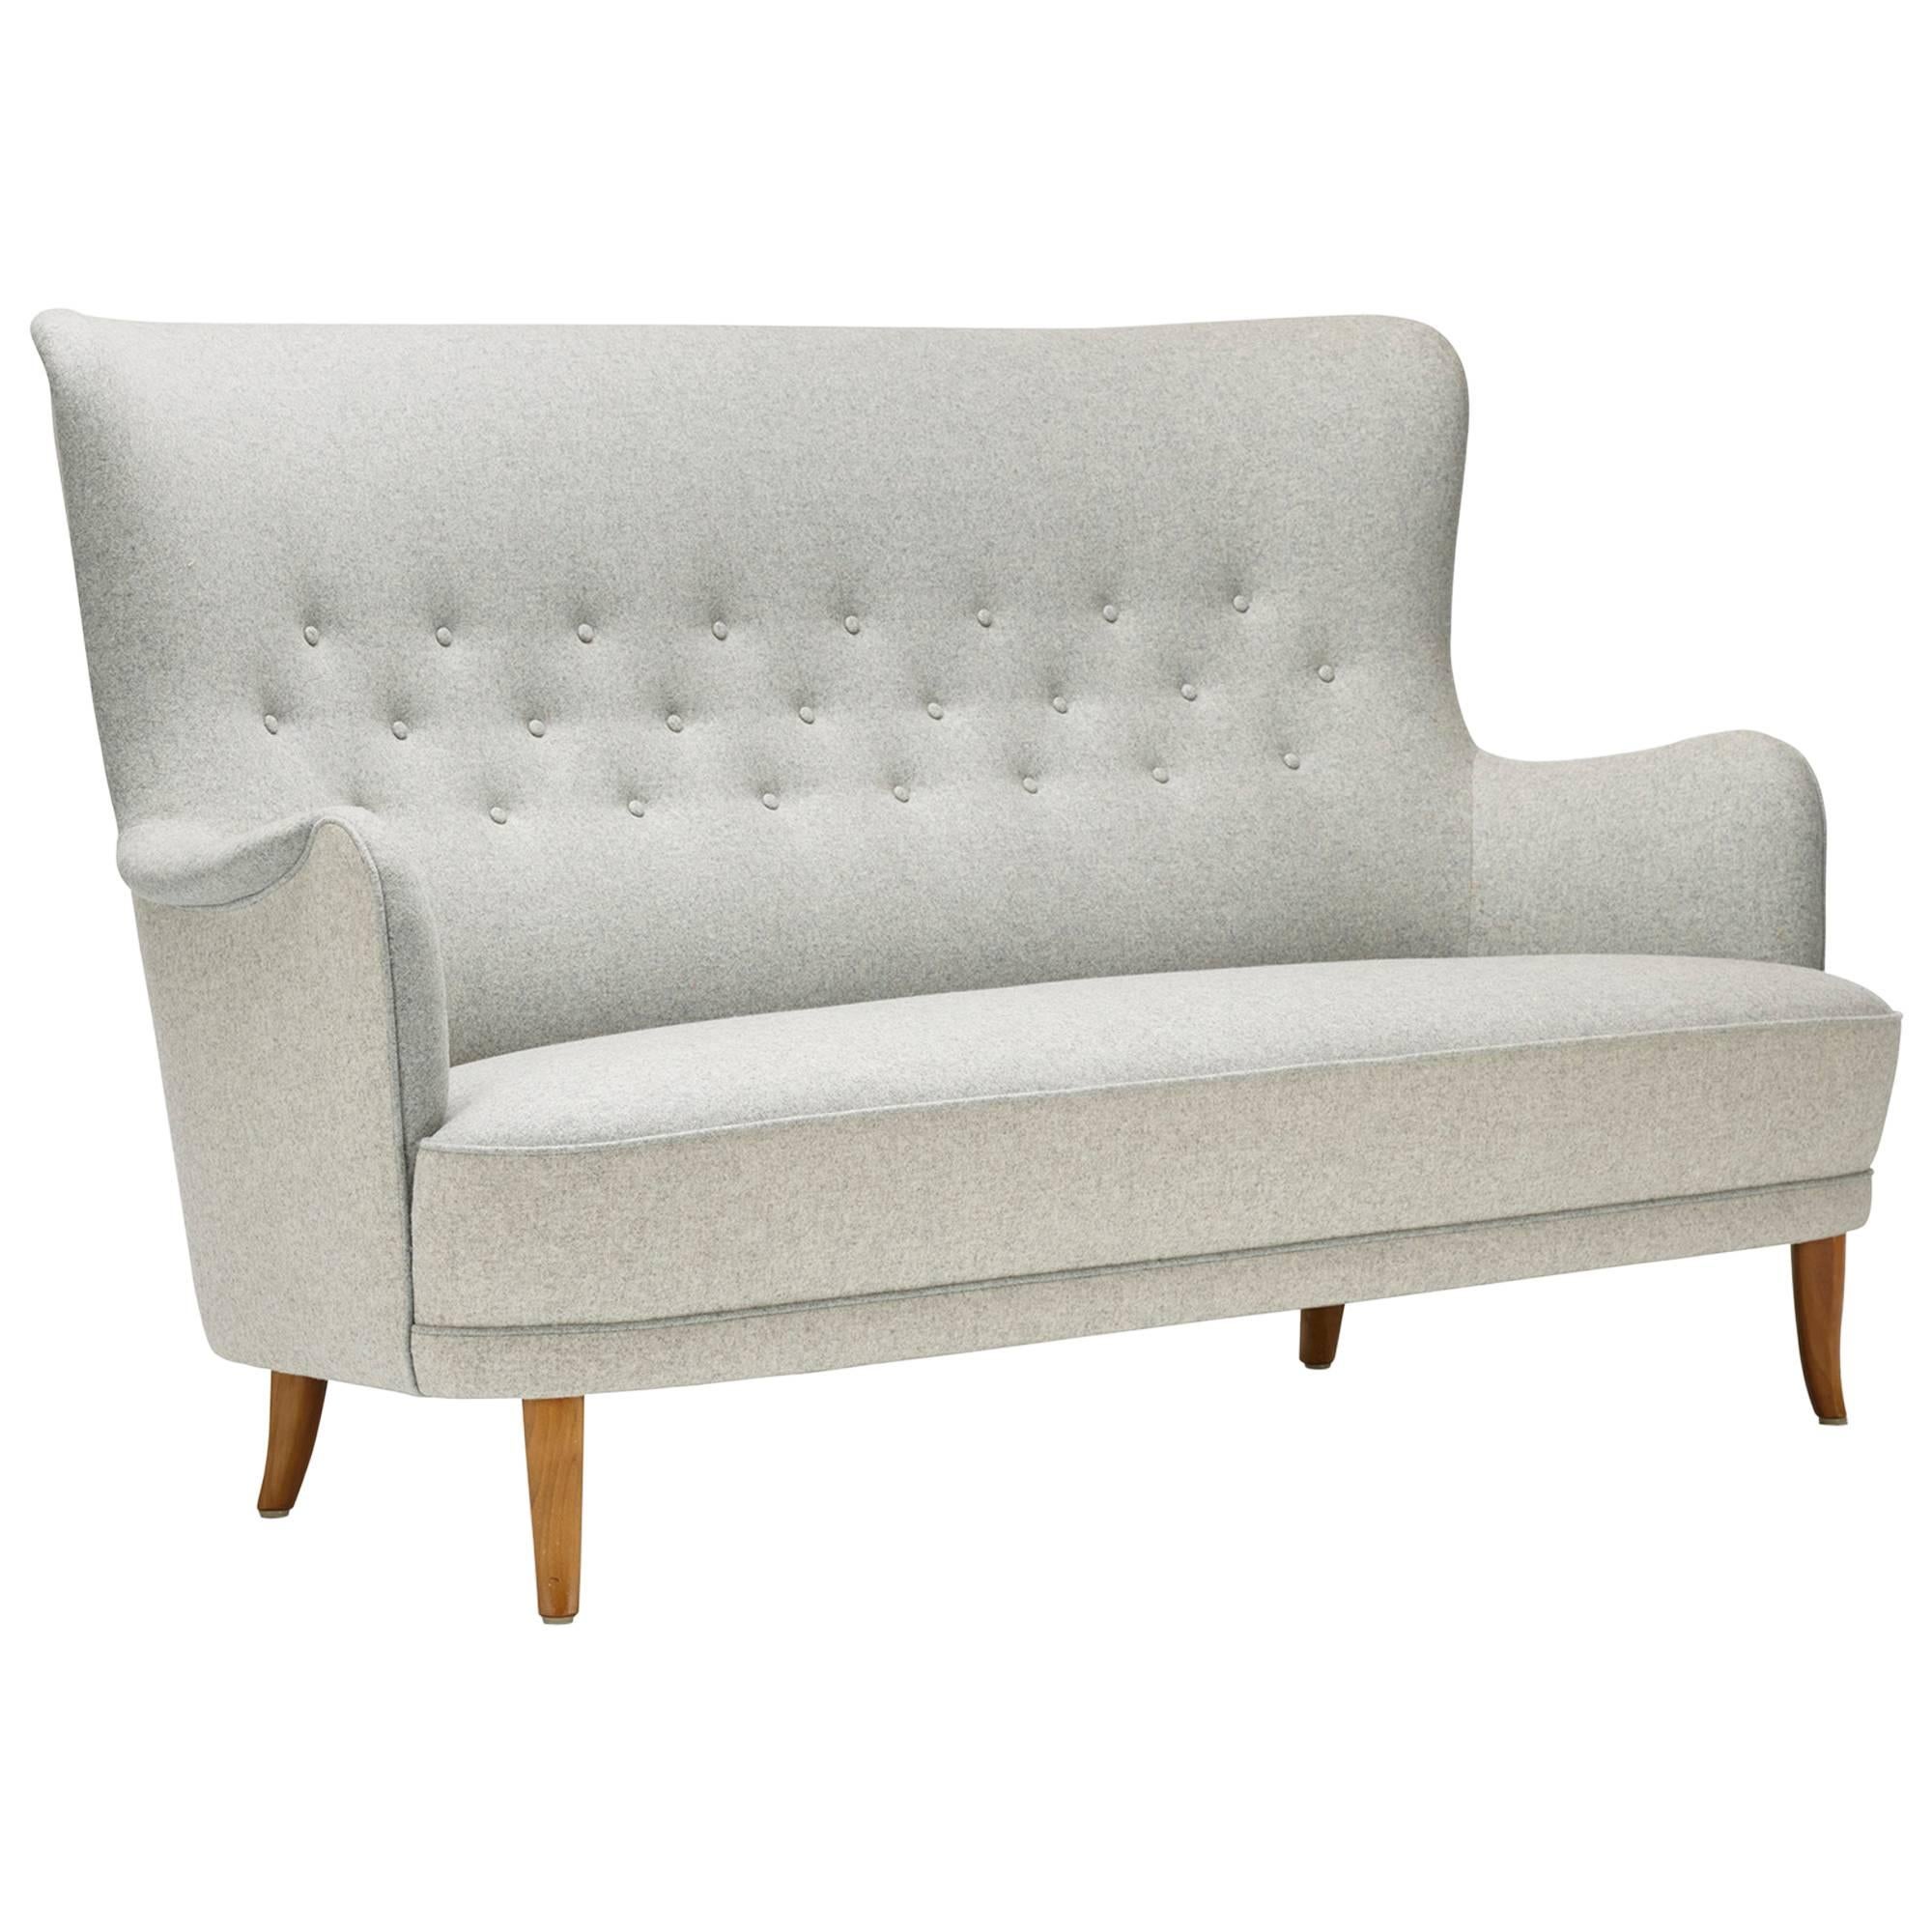 Sofa by Carl Malmsten for O.H. Sjören